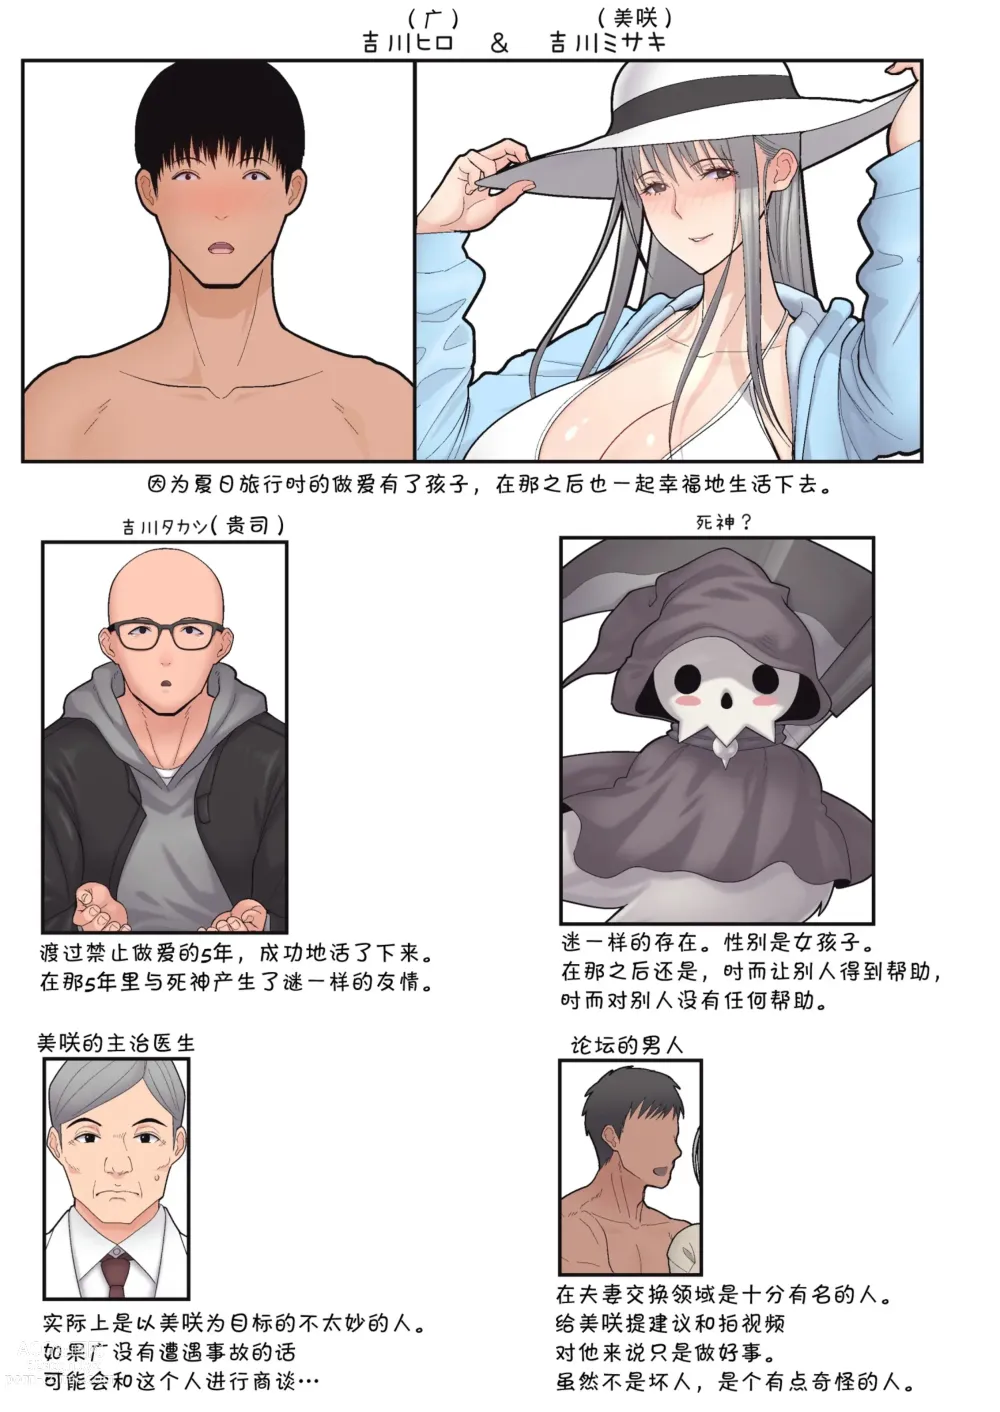 Page 109 of doujinshi Tsumaomoi、 Netorase 1+2 (decensored)